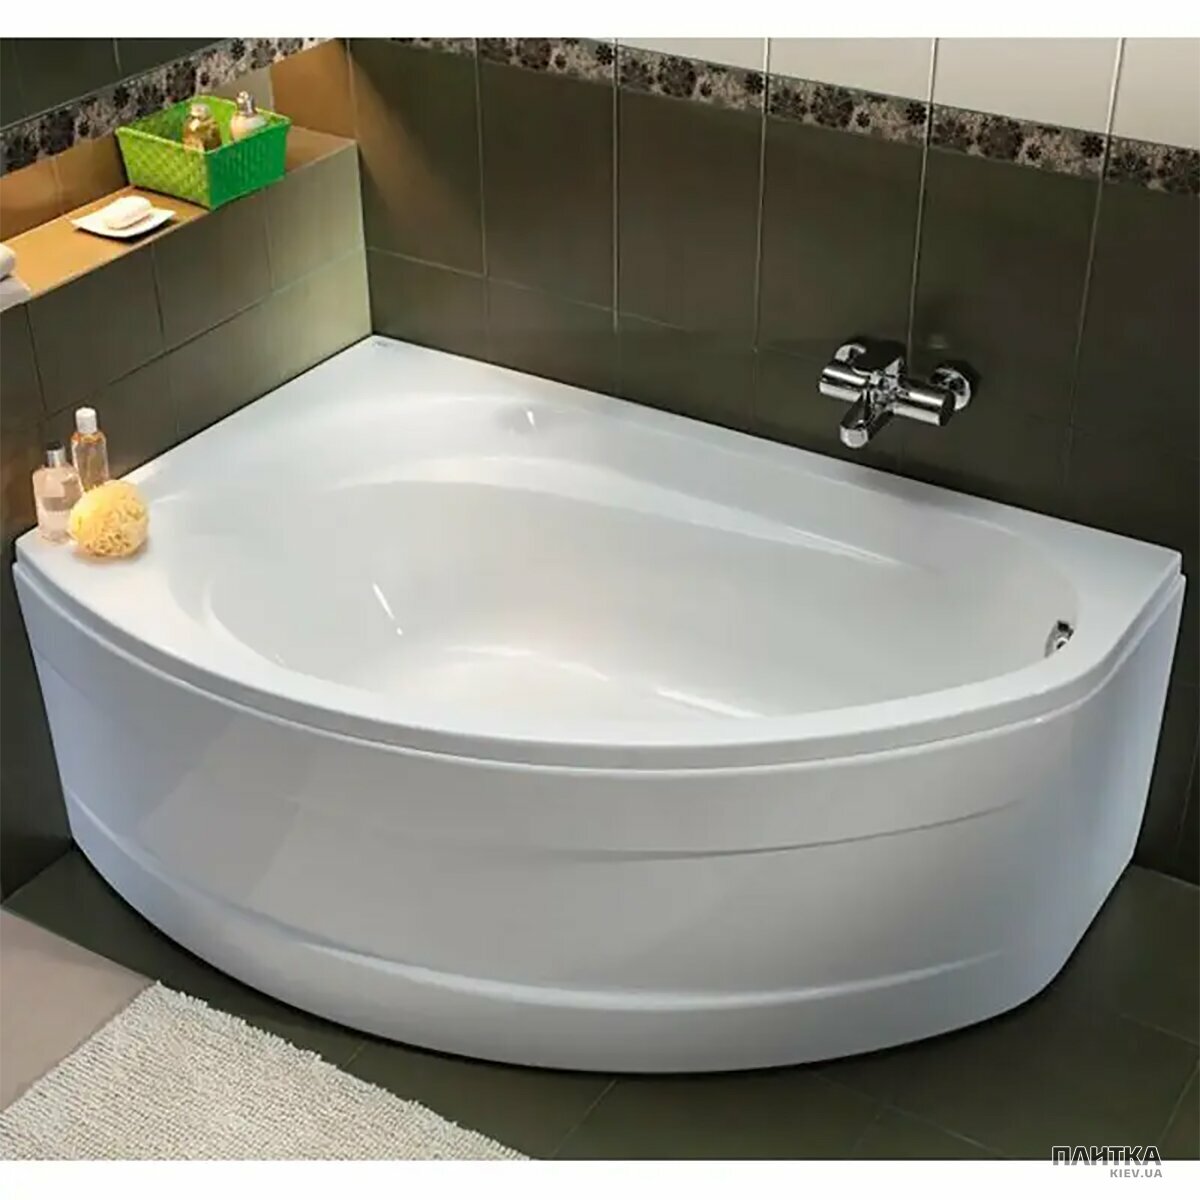 Акриловая ванна Kolo Supero 5534000 SUPERO Ванна ассиметричная 145x85 см, слив справа, цвет белый, в комплекте с ножками SN14 белый